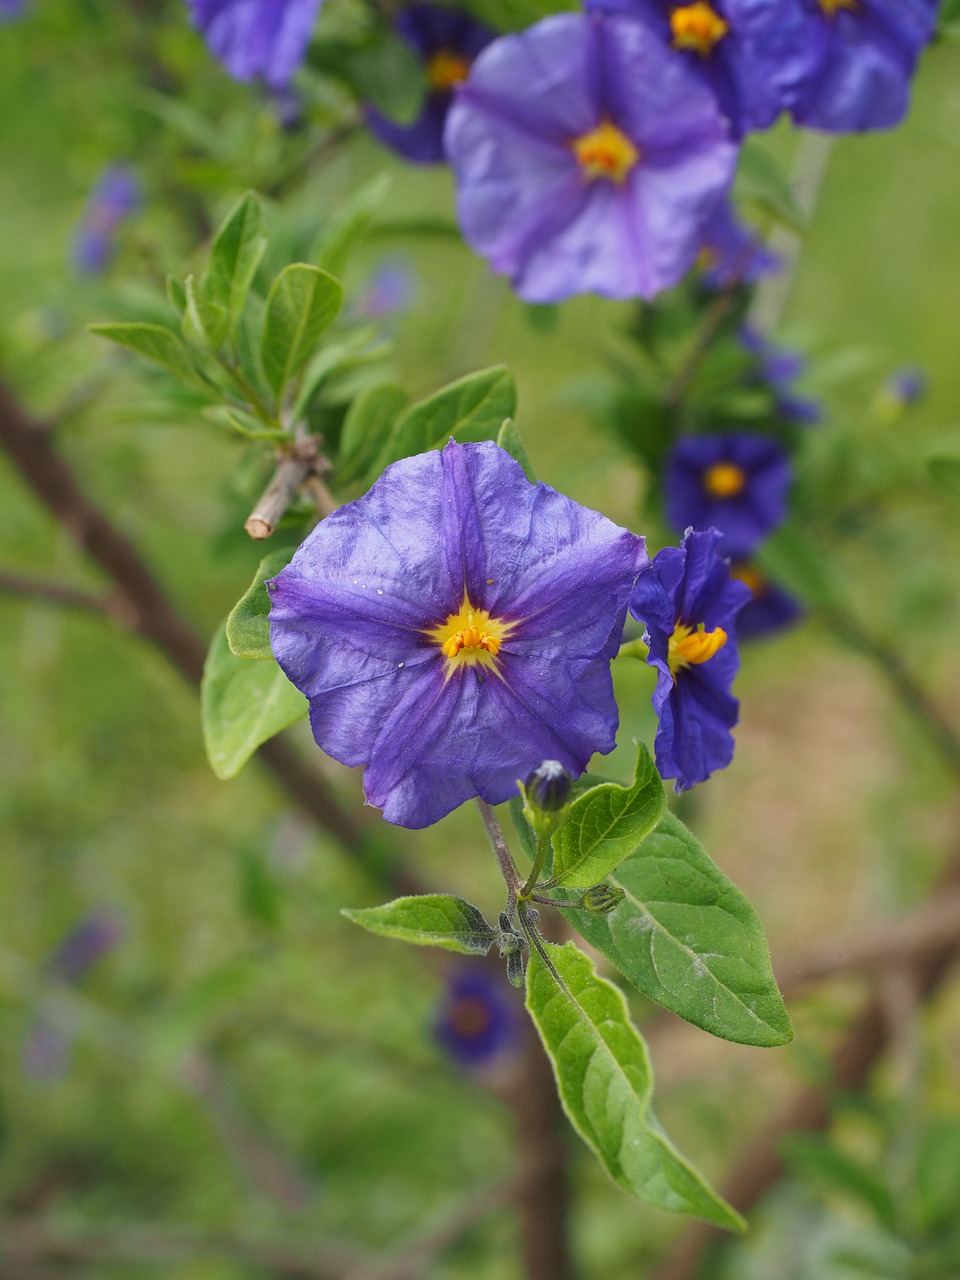 gentian shrub flowers purple free photo